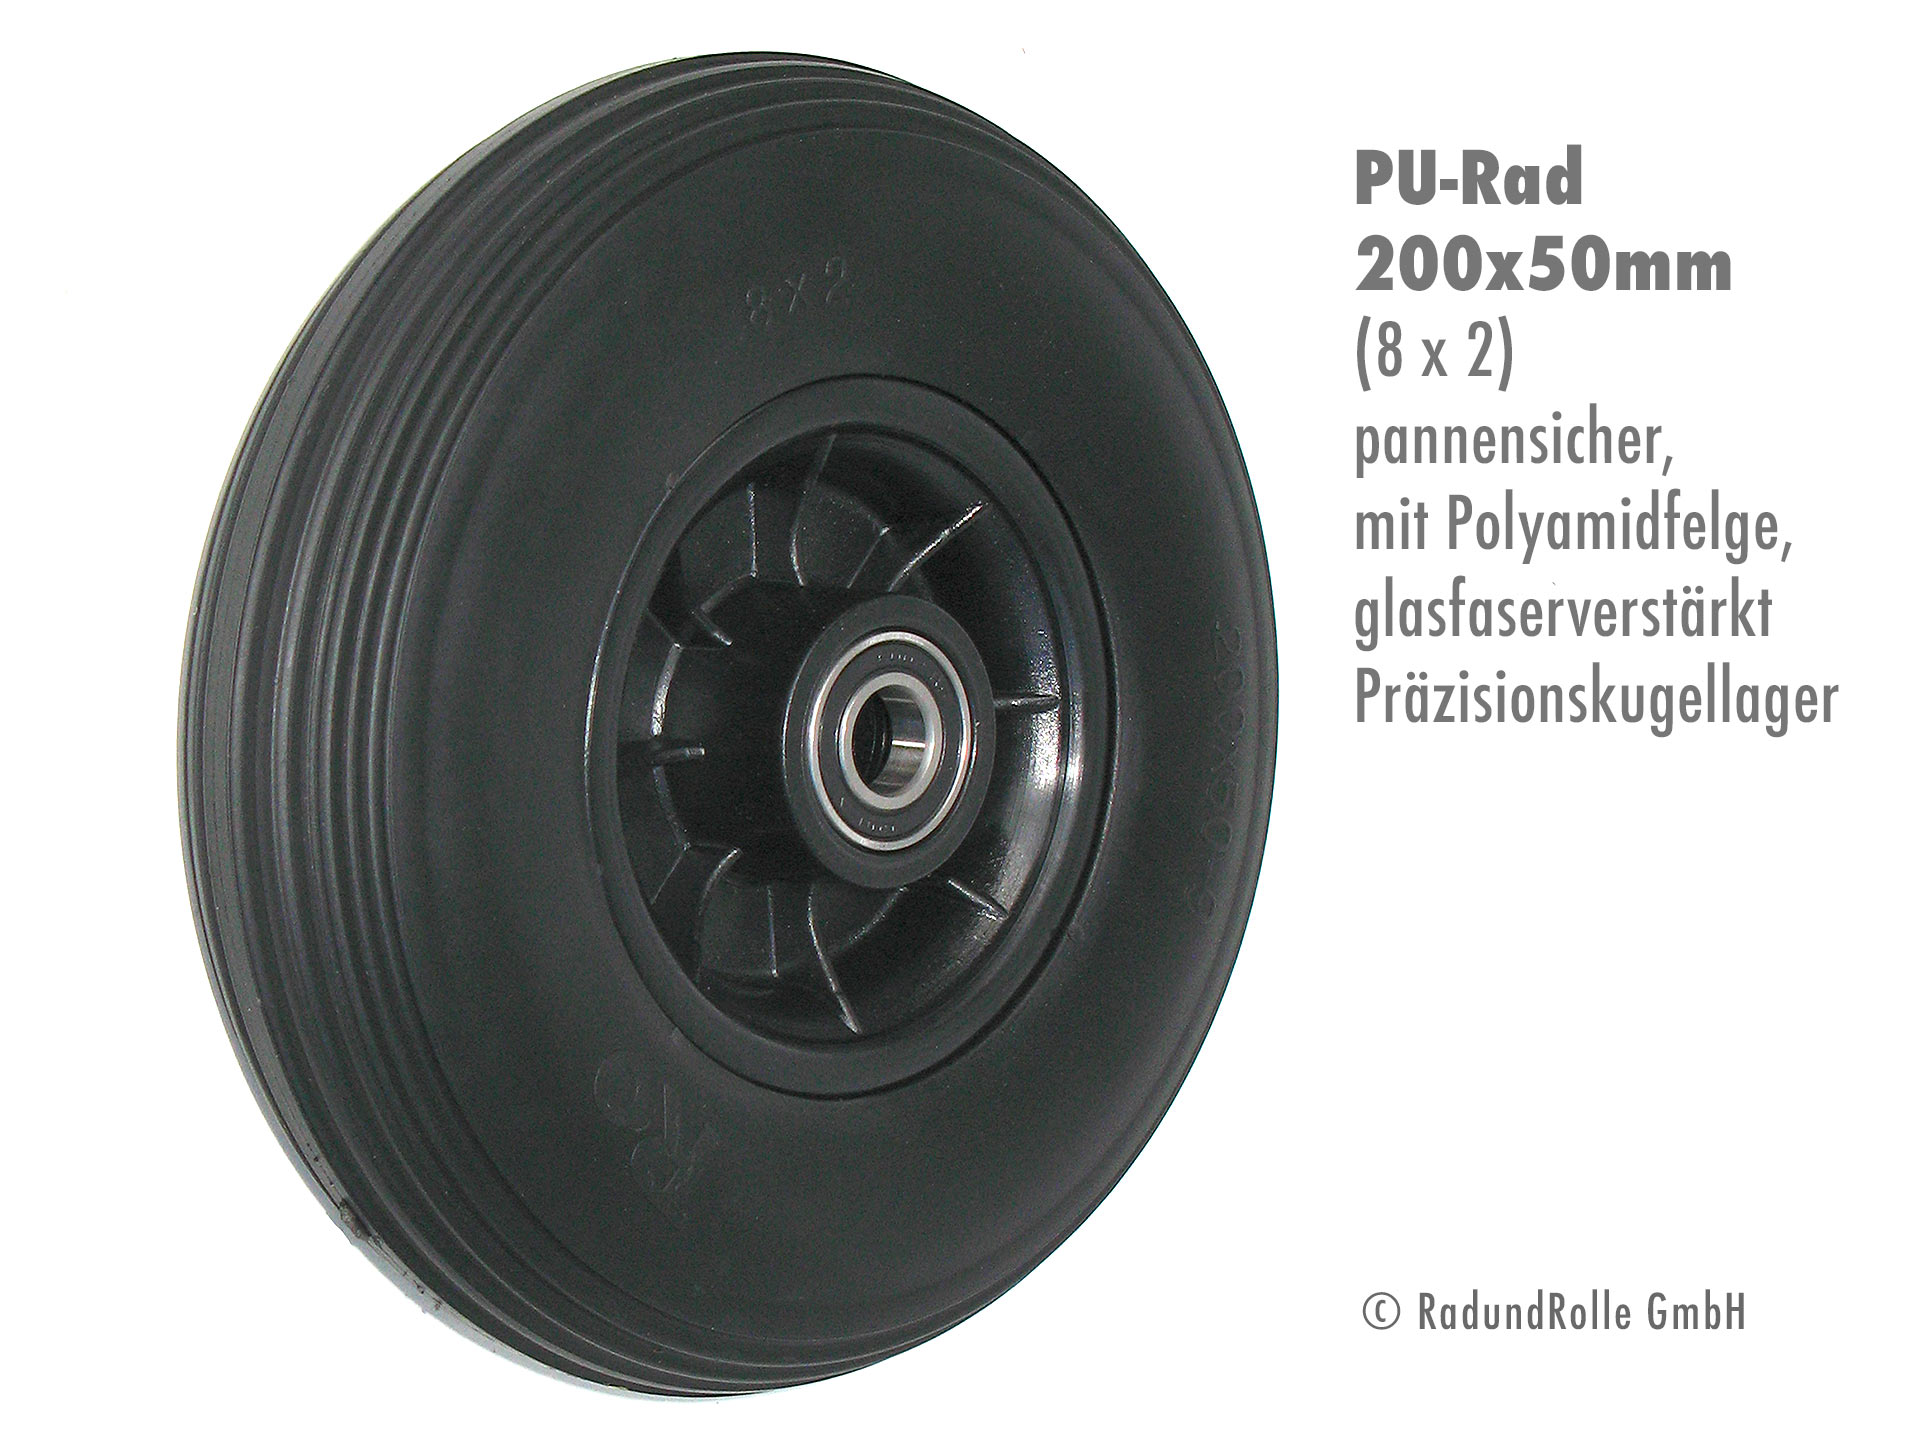 Qualitäts-Rad mit Polyurethan-Reifen 8x2, Kunststofffelge aus glasfaserverstärktem Polyamid mit Präzisionskugellagern